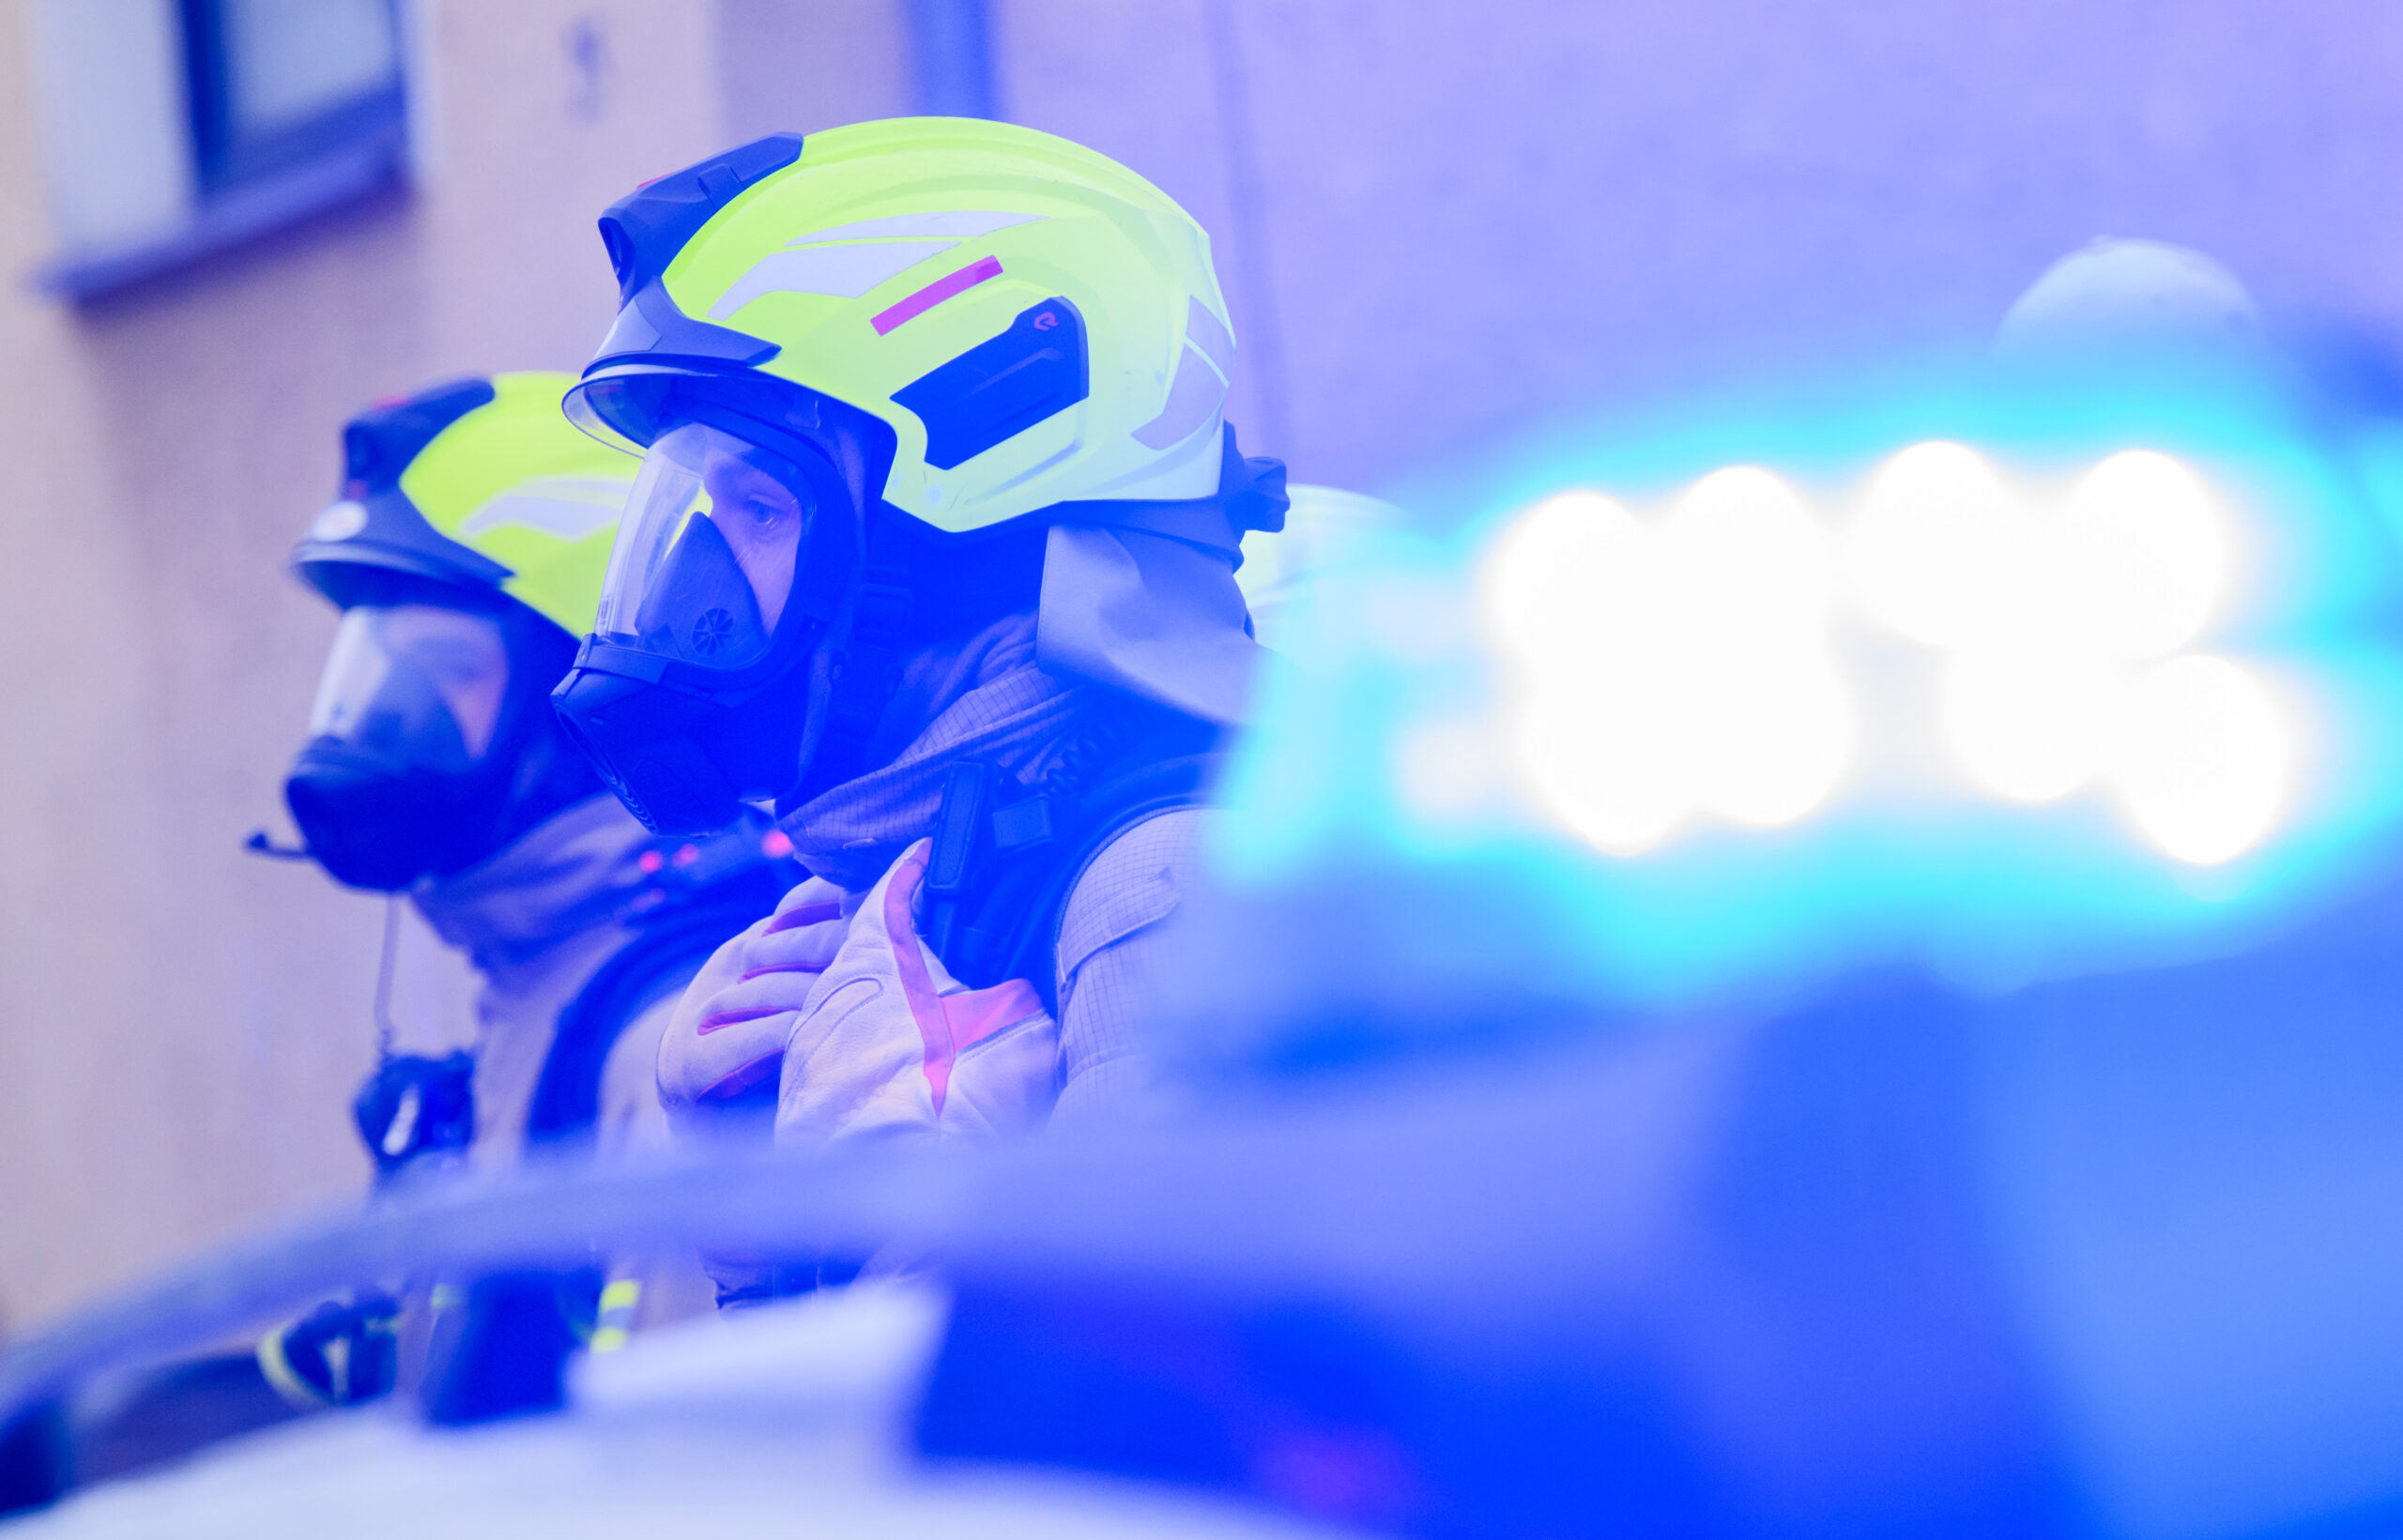 Feuerwehrmänner aus Hannover wurden bei einem Einsatz attackiert (Symbolfoto).